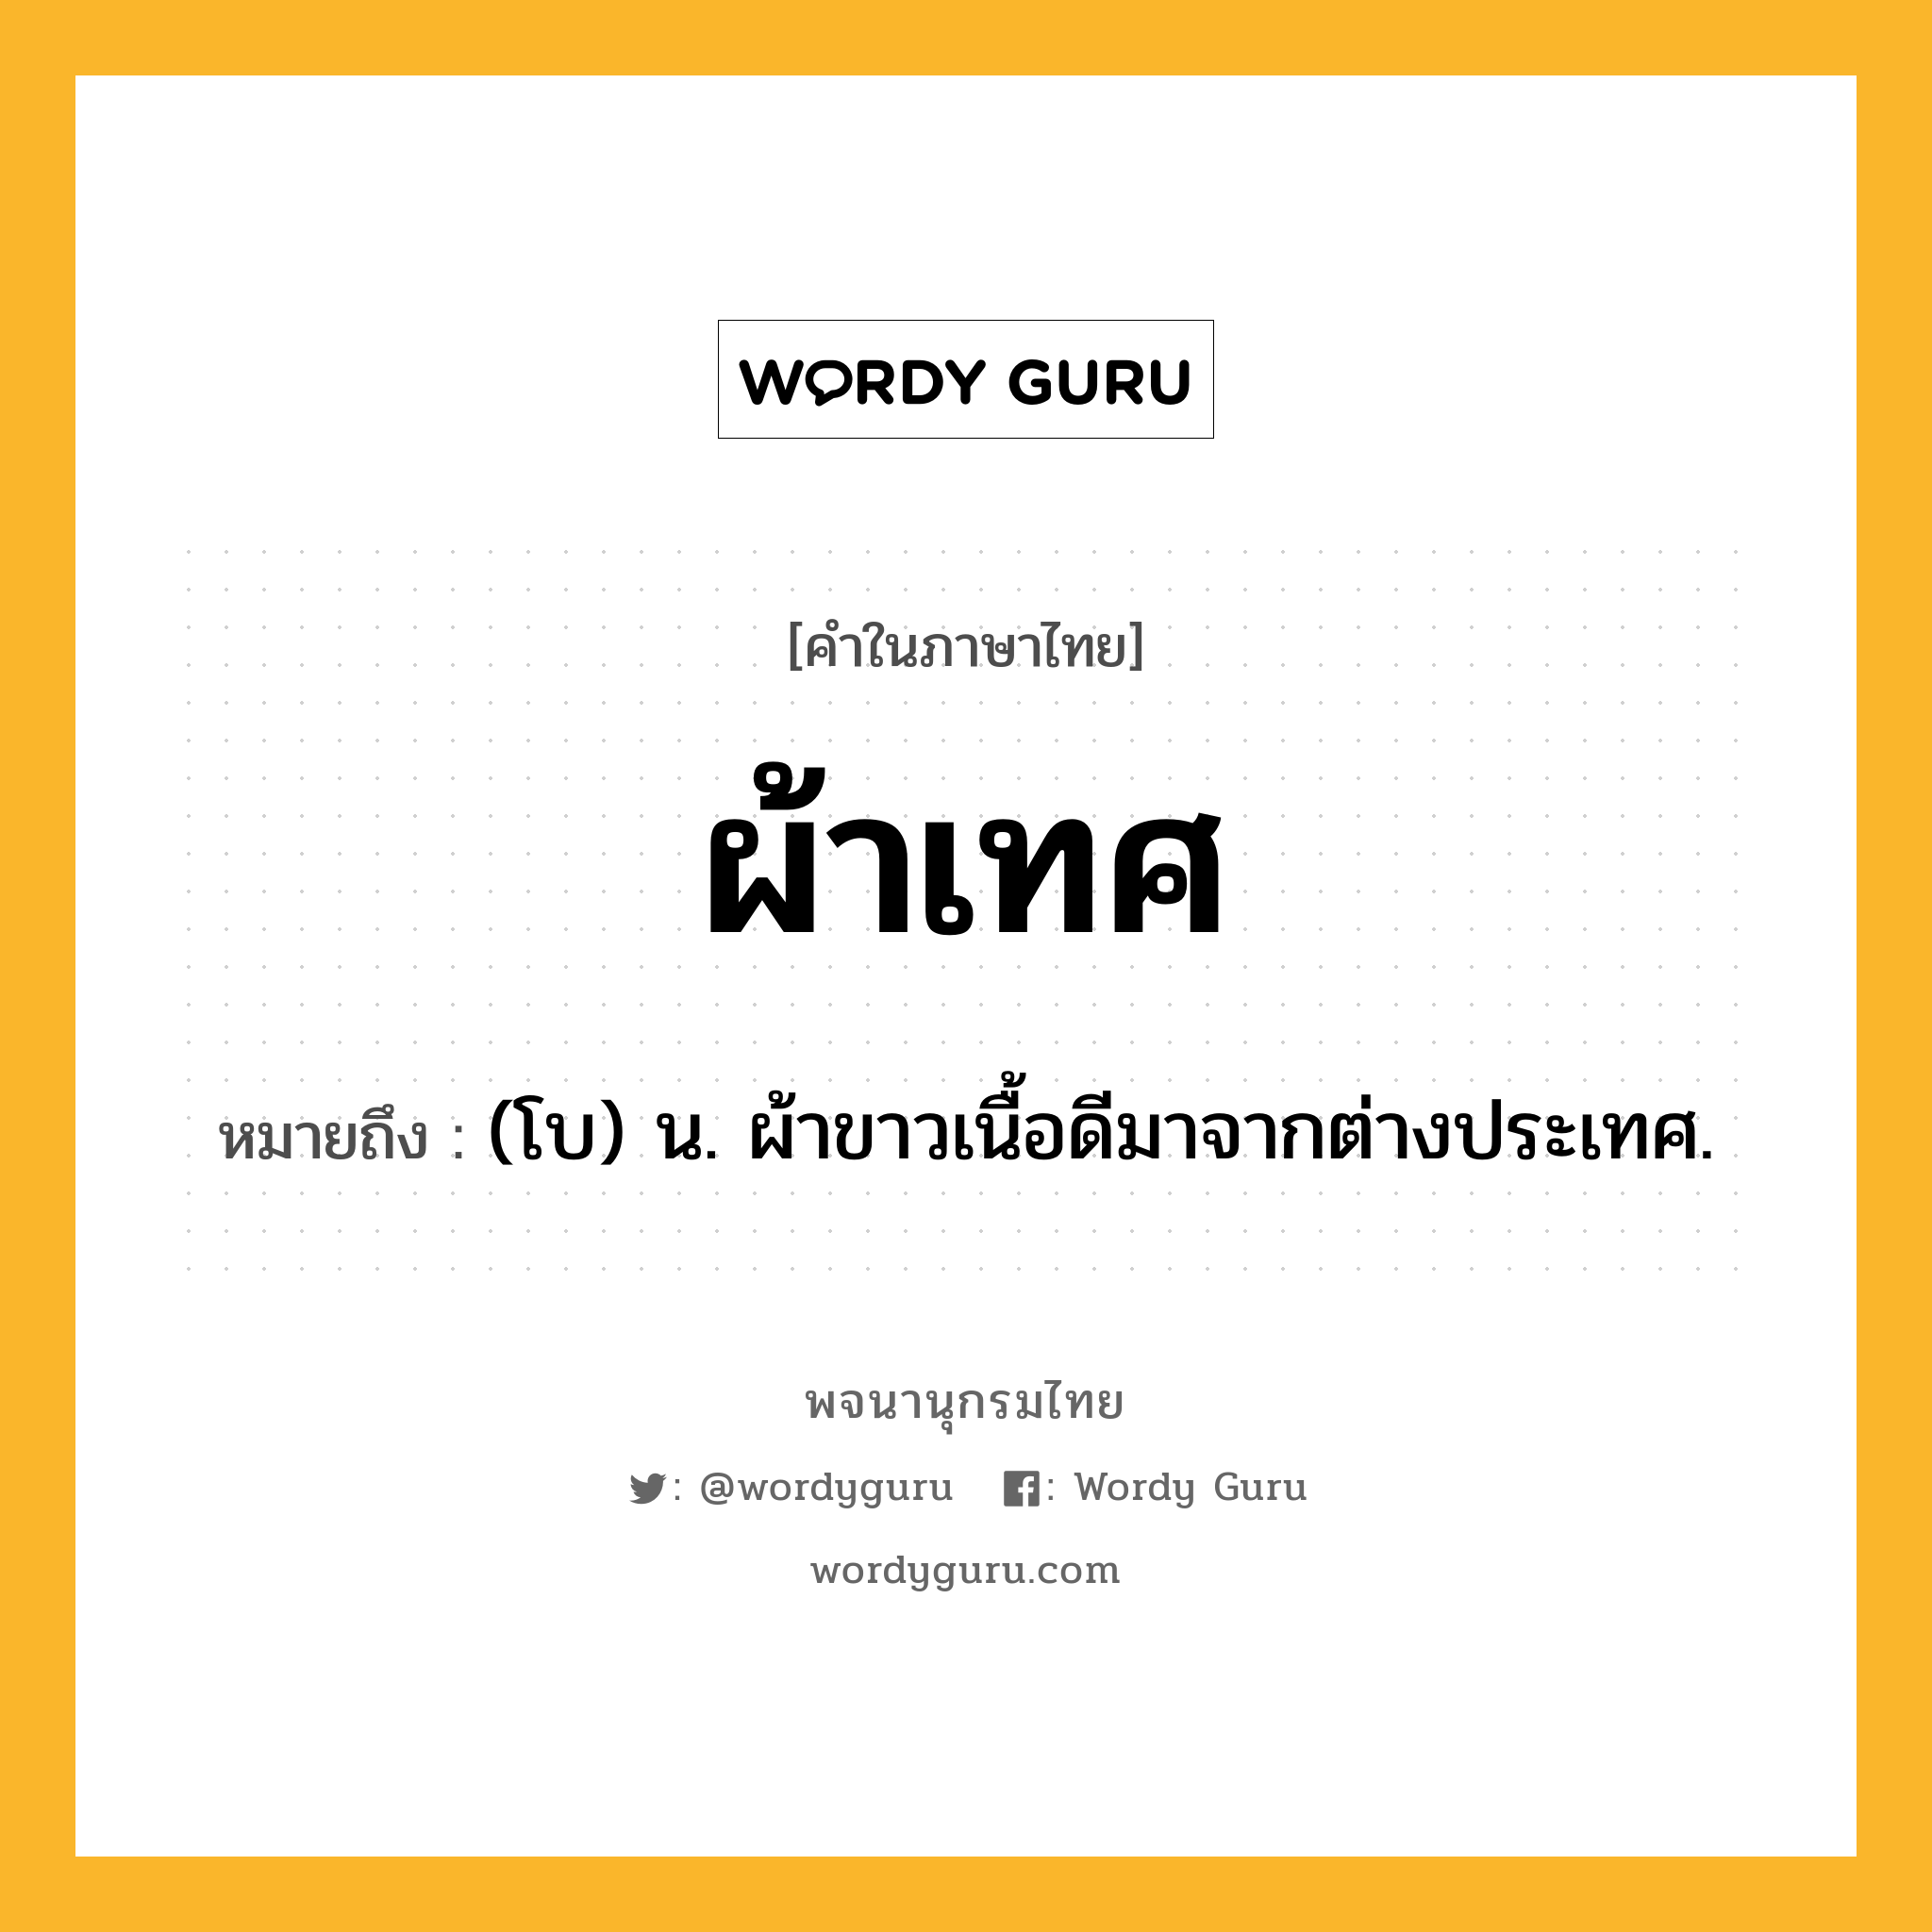 ผ้าเทศ หมายถึงอะไร?, คำในภาษาไทย ผ้าเทศ หมายถึง (โบ) น. ผ้าขาวเนื้อดีมาจากต่างประเทศ.